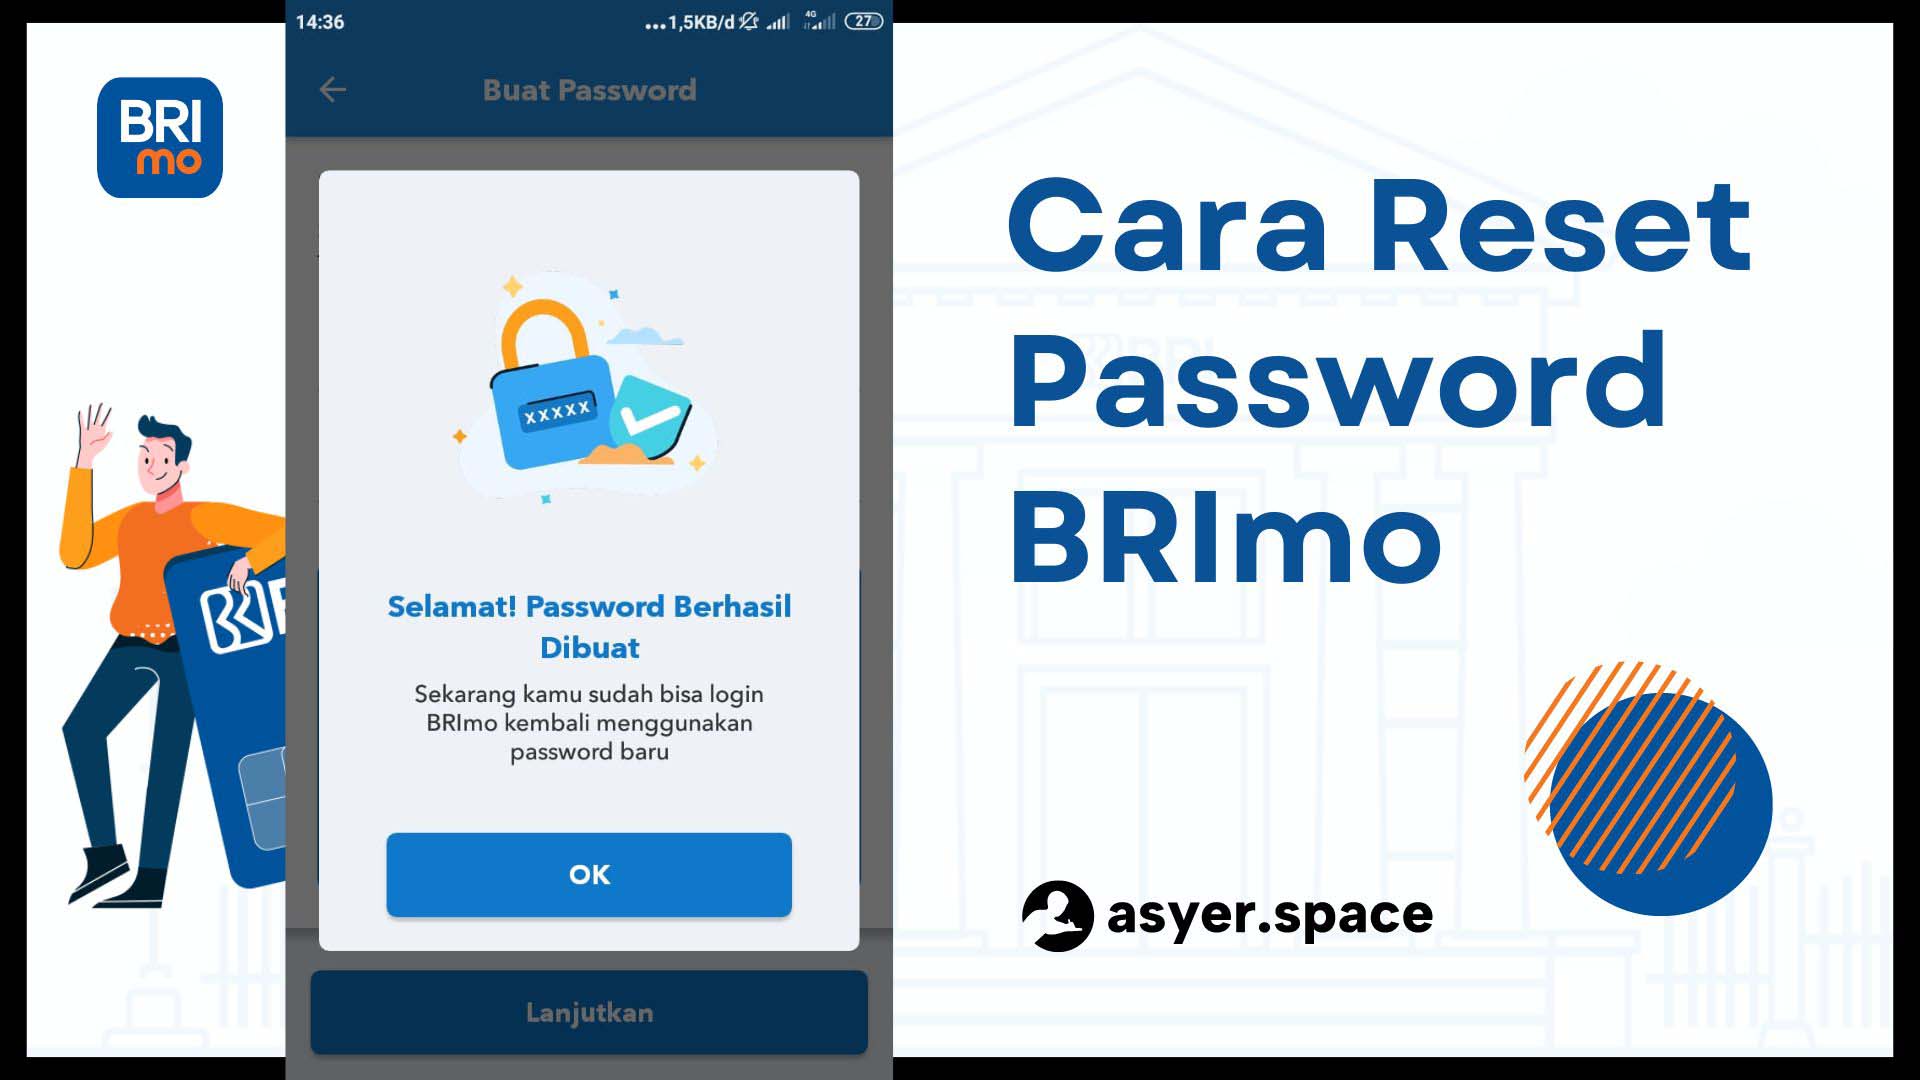 Cara Reset Password BRImo